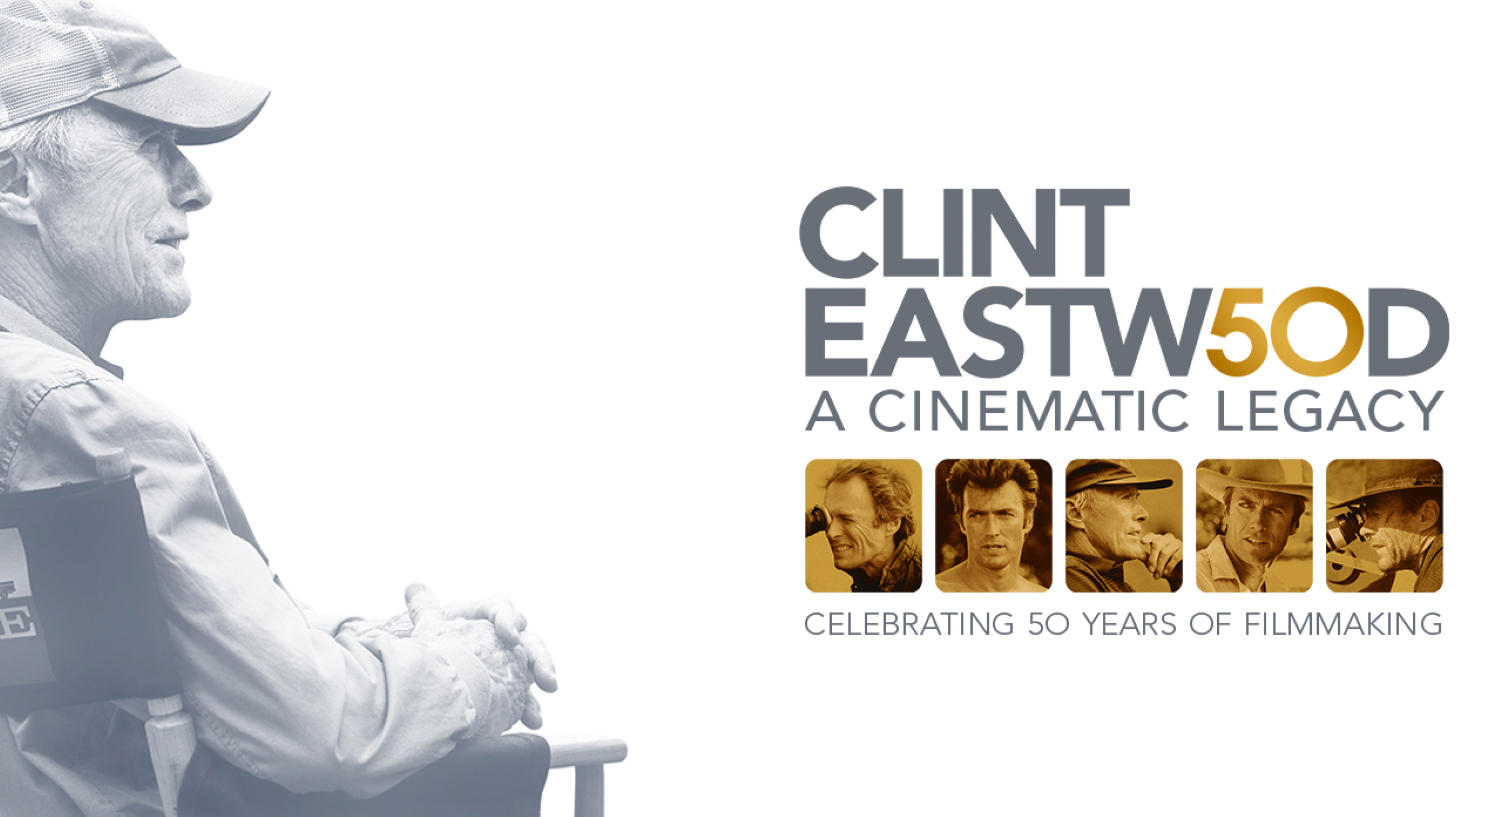 Clint Eastwood: A Cinematic Legacy - novità Infinity+ gennaio 2022